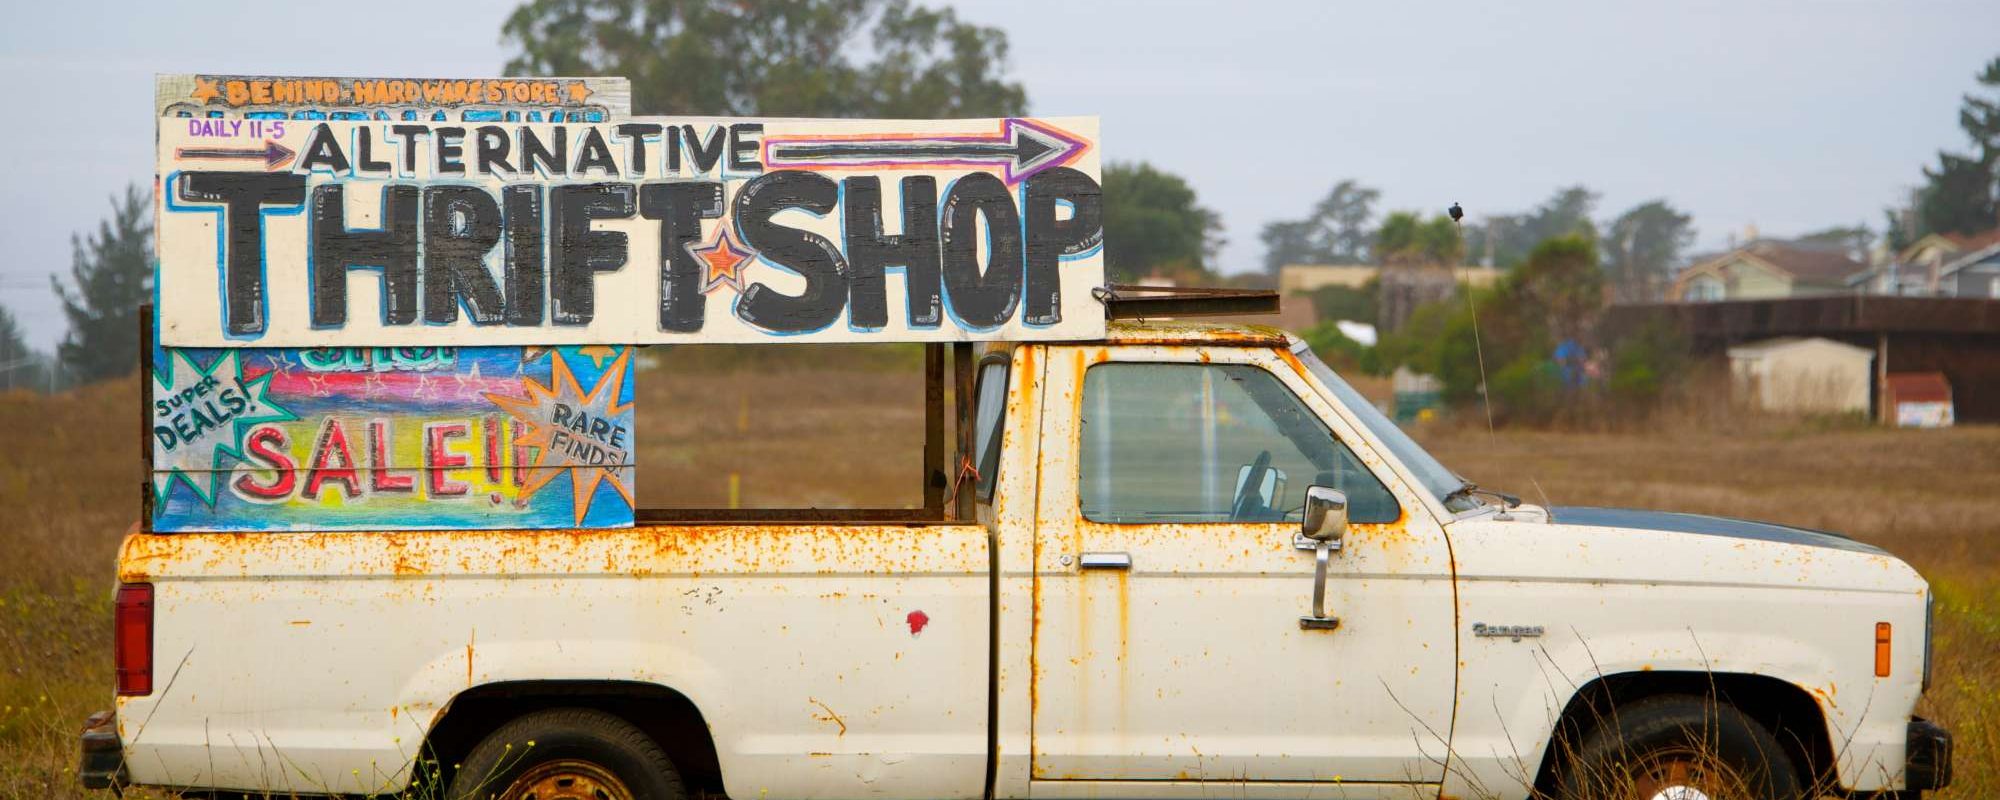 A truck that reads "alternative thrift shop"